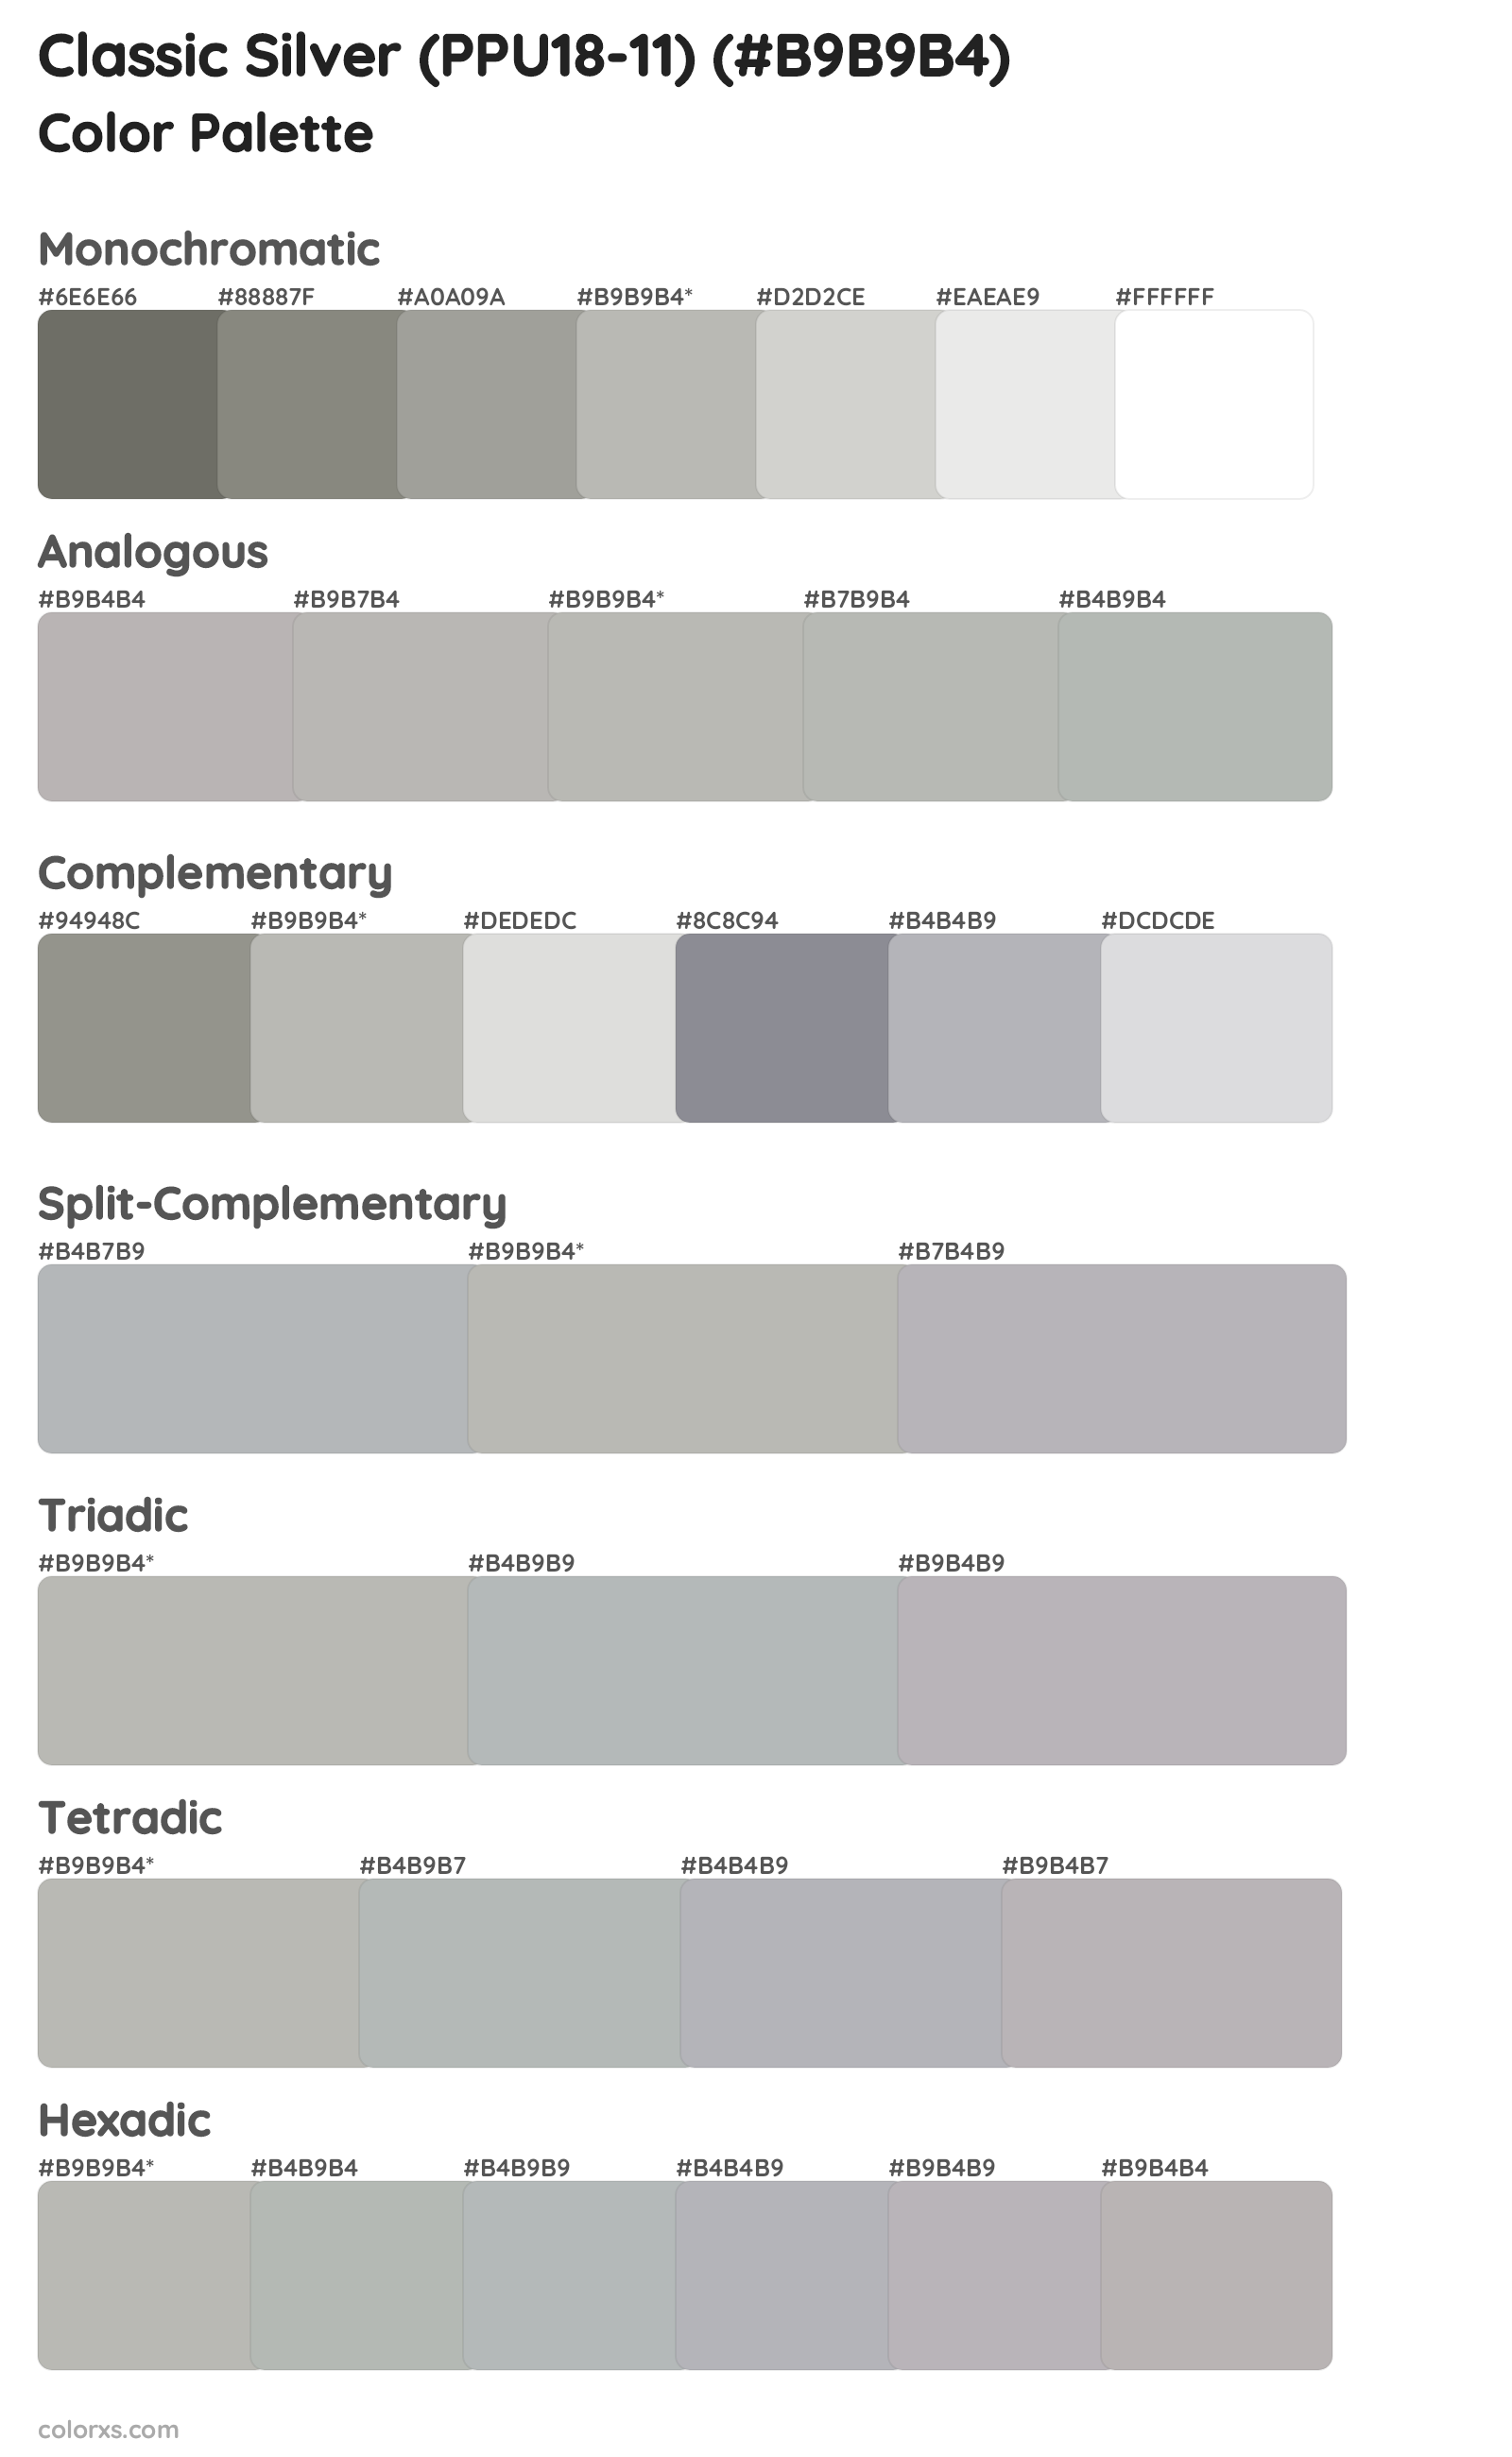 Classic Silver (PPU18-11) Color Scheme Palettes